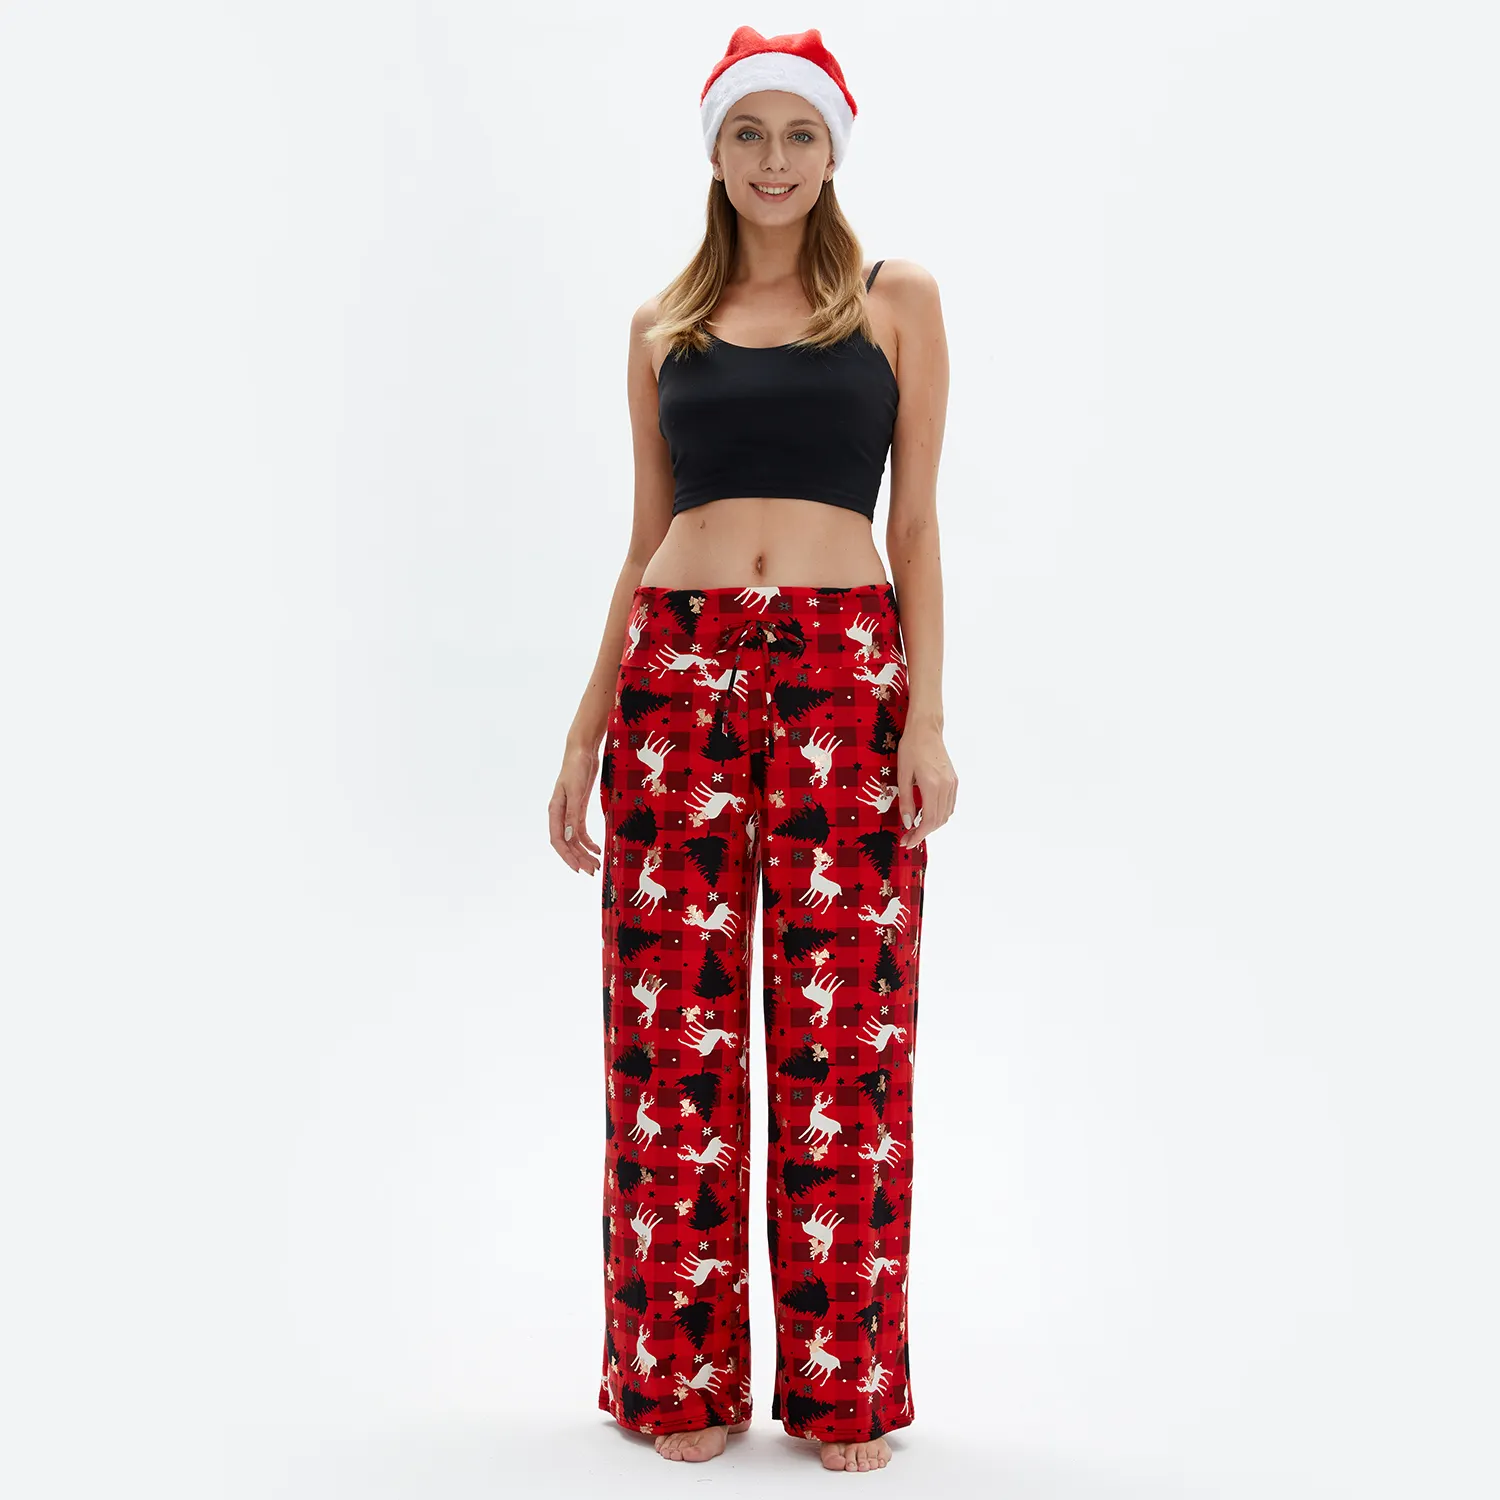 हॉट बिक्री नींद लेगिंग पैंट महिलाओं महिलाओं क्रिसमस प्रिंट कैजुअल स्चर पालाजो पैंट के साथ कैजुअल स्माल पैलेट